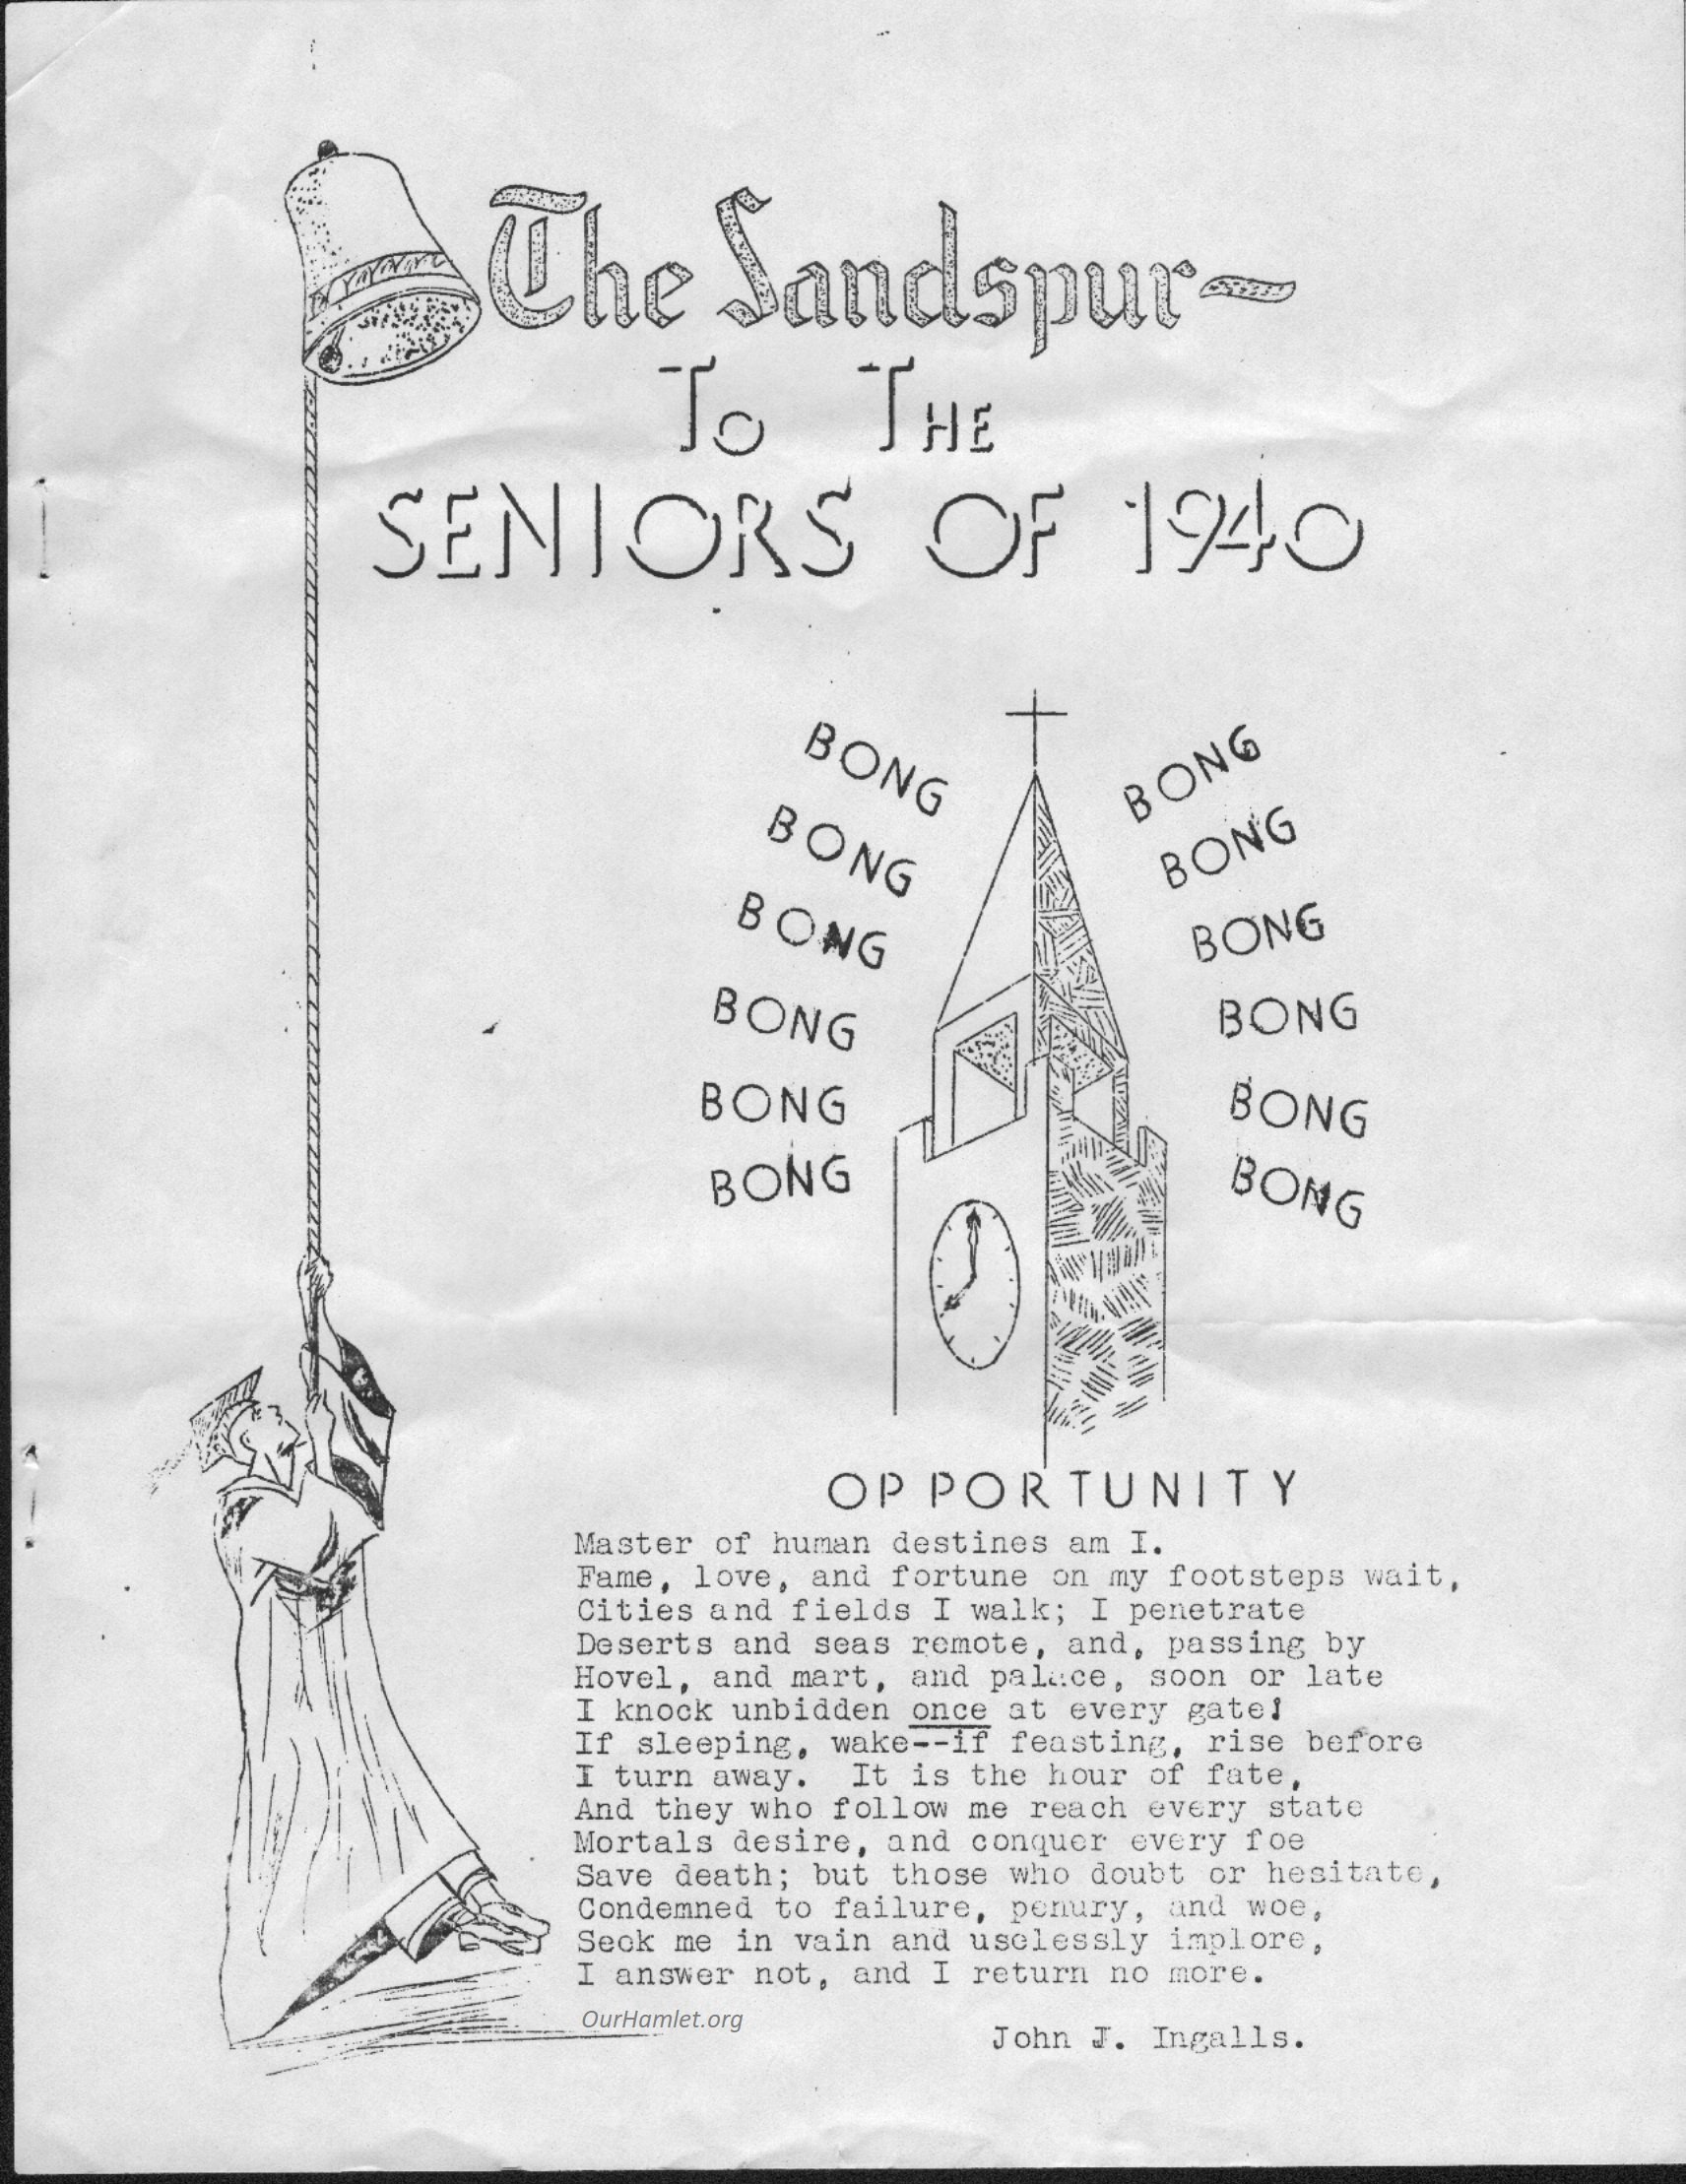 Sandspur 1940 a OH.jpg